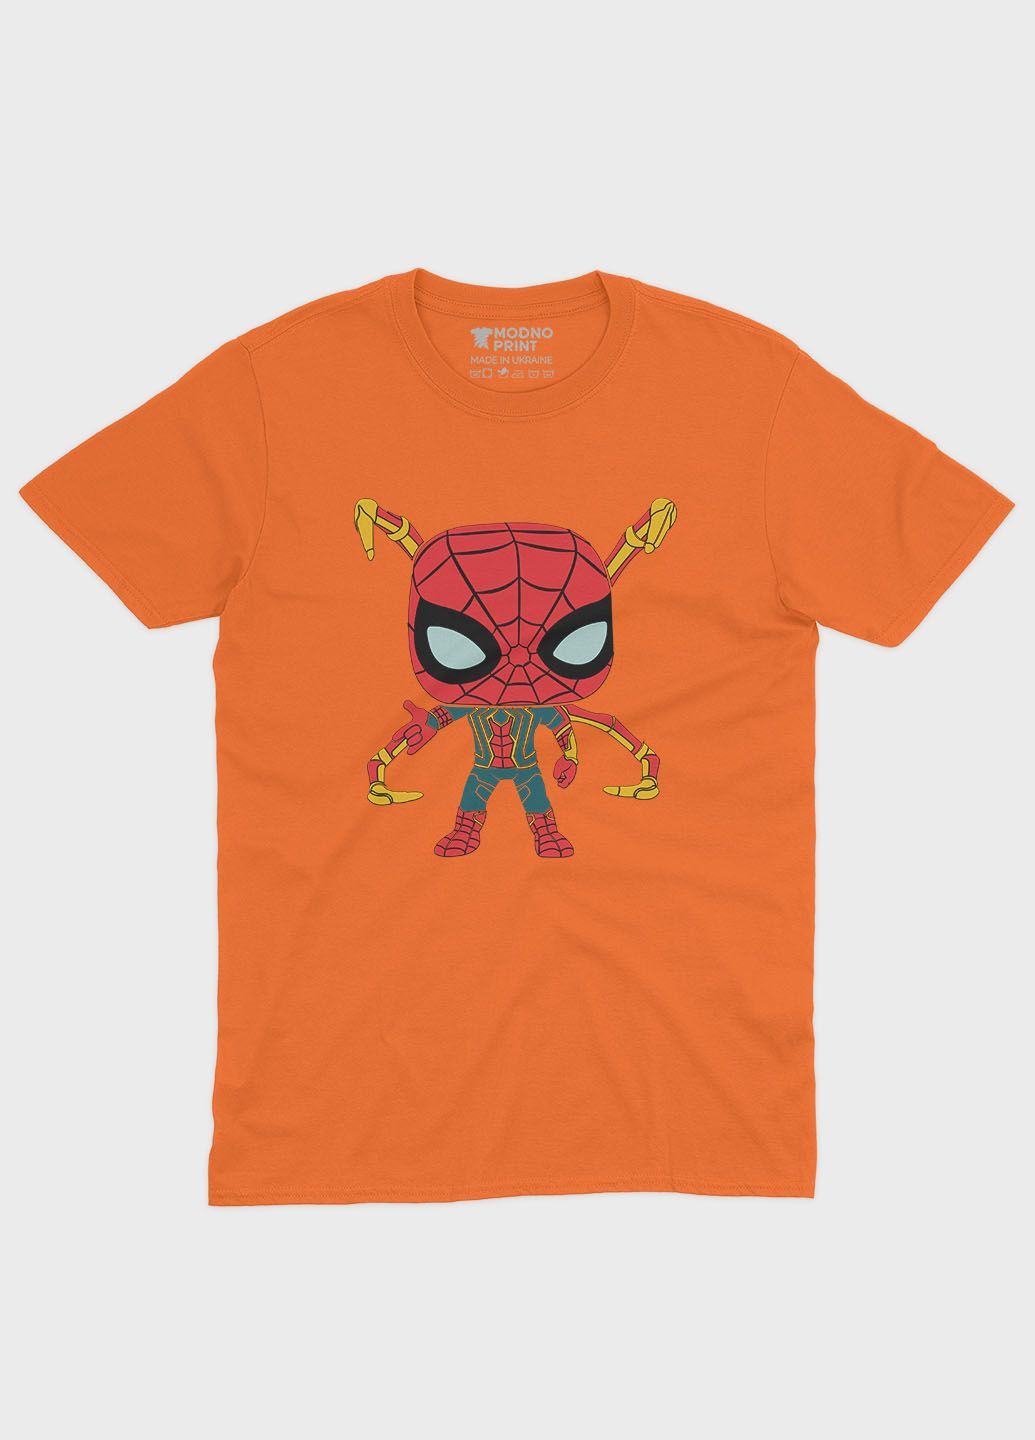 Помаранчева демісезонна футболка для хлопчика з принтом супергероя - людина-павук (ts001-1-ora-006-014-015-b) Modno